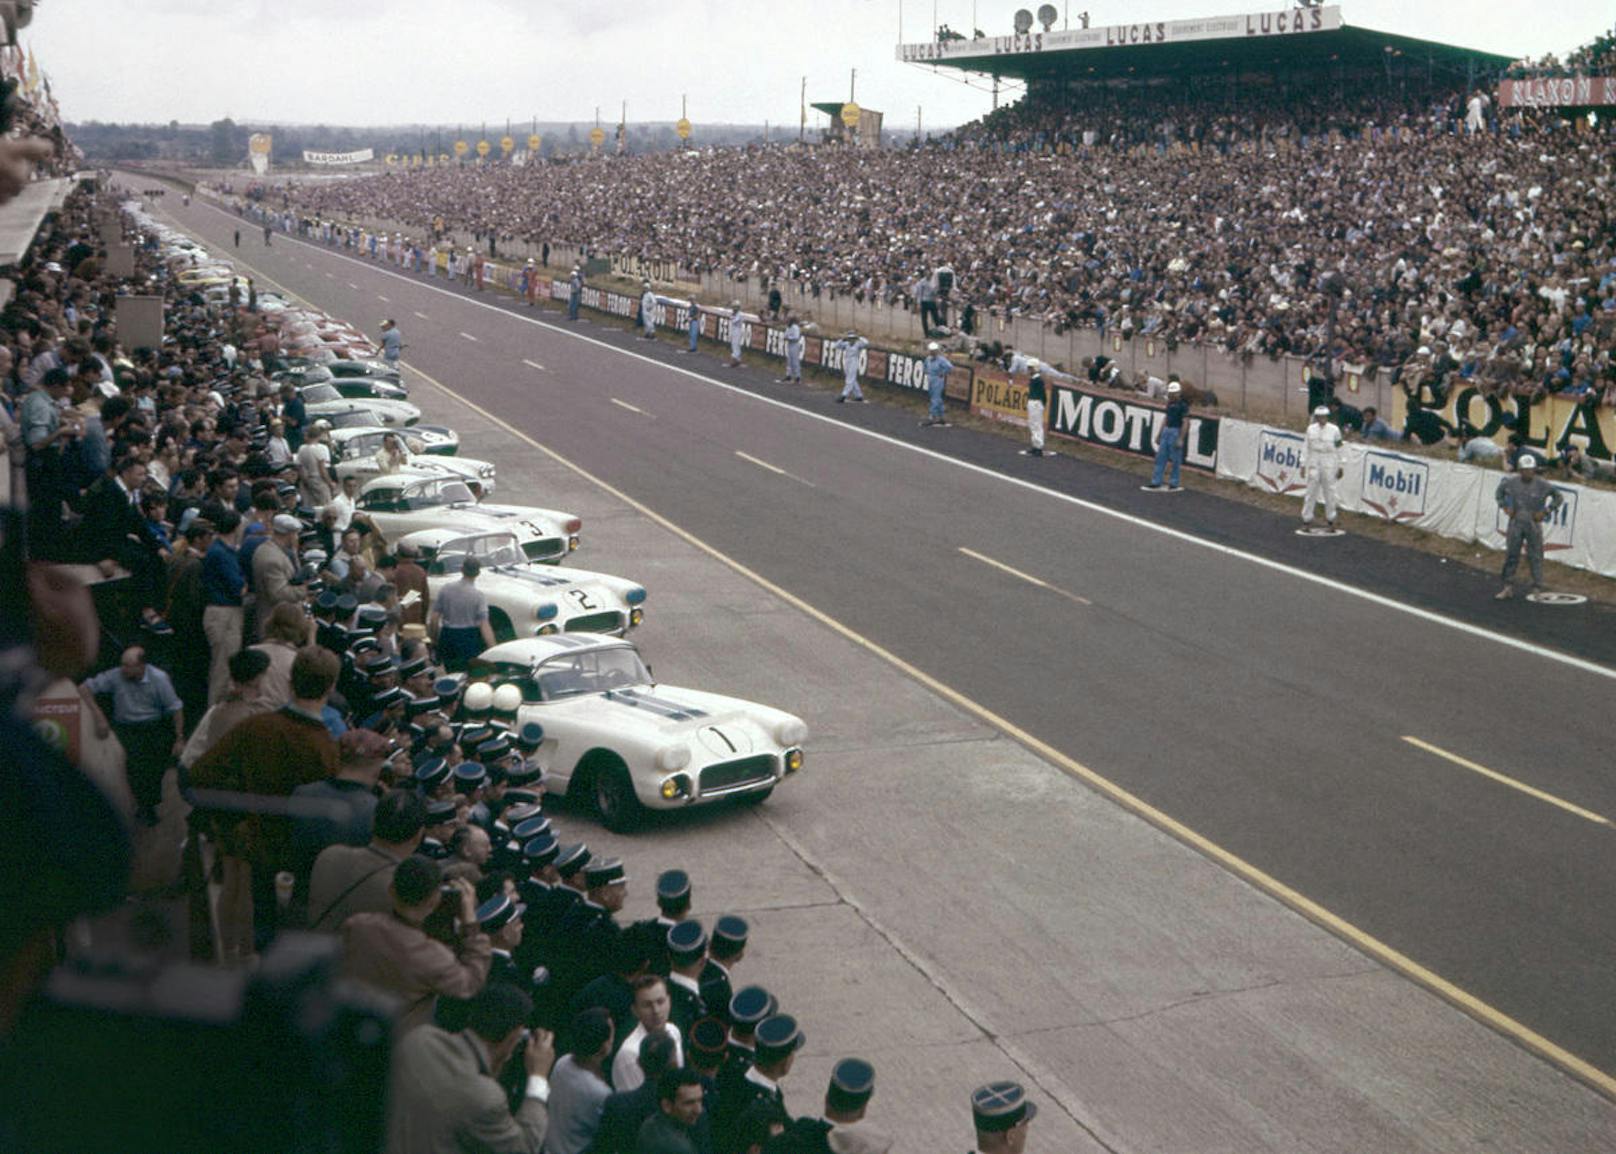 Start zu den 24 Stunden von Le Mans im Jahr 1960. Die Piloten stehen rechts und warten auf die Startfreigabe, um dann über die Strecke zu spurten und loszufahren. Vier Corvettes starteten, Fitch/Grossman erzielten einen Klassensieg und Platz 8 - gegen Porsche, Aston Martin, Ferrari und diverse andere Konkurrenten.